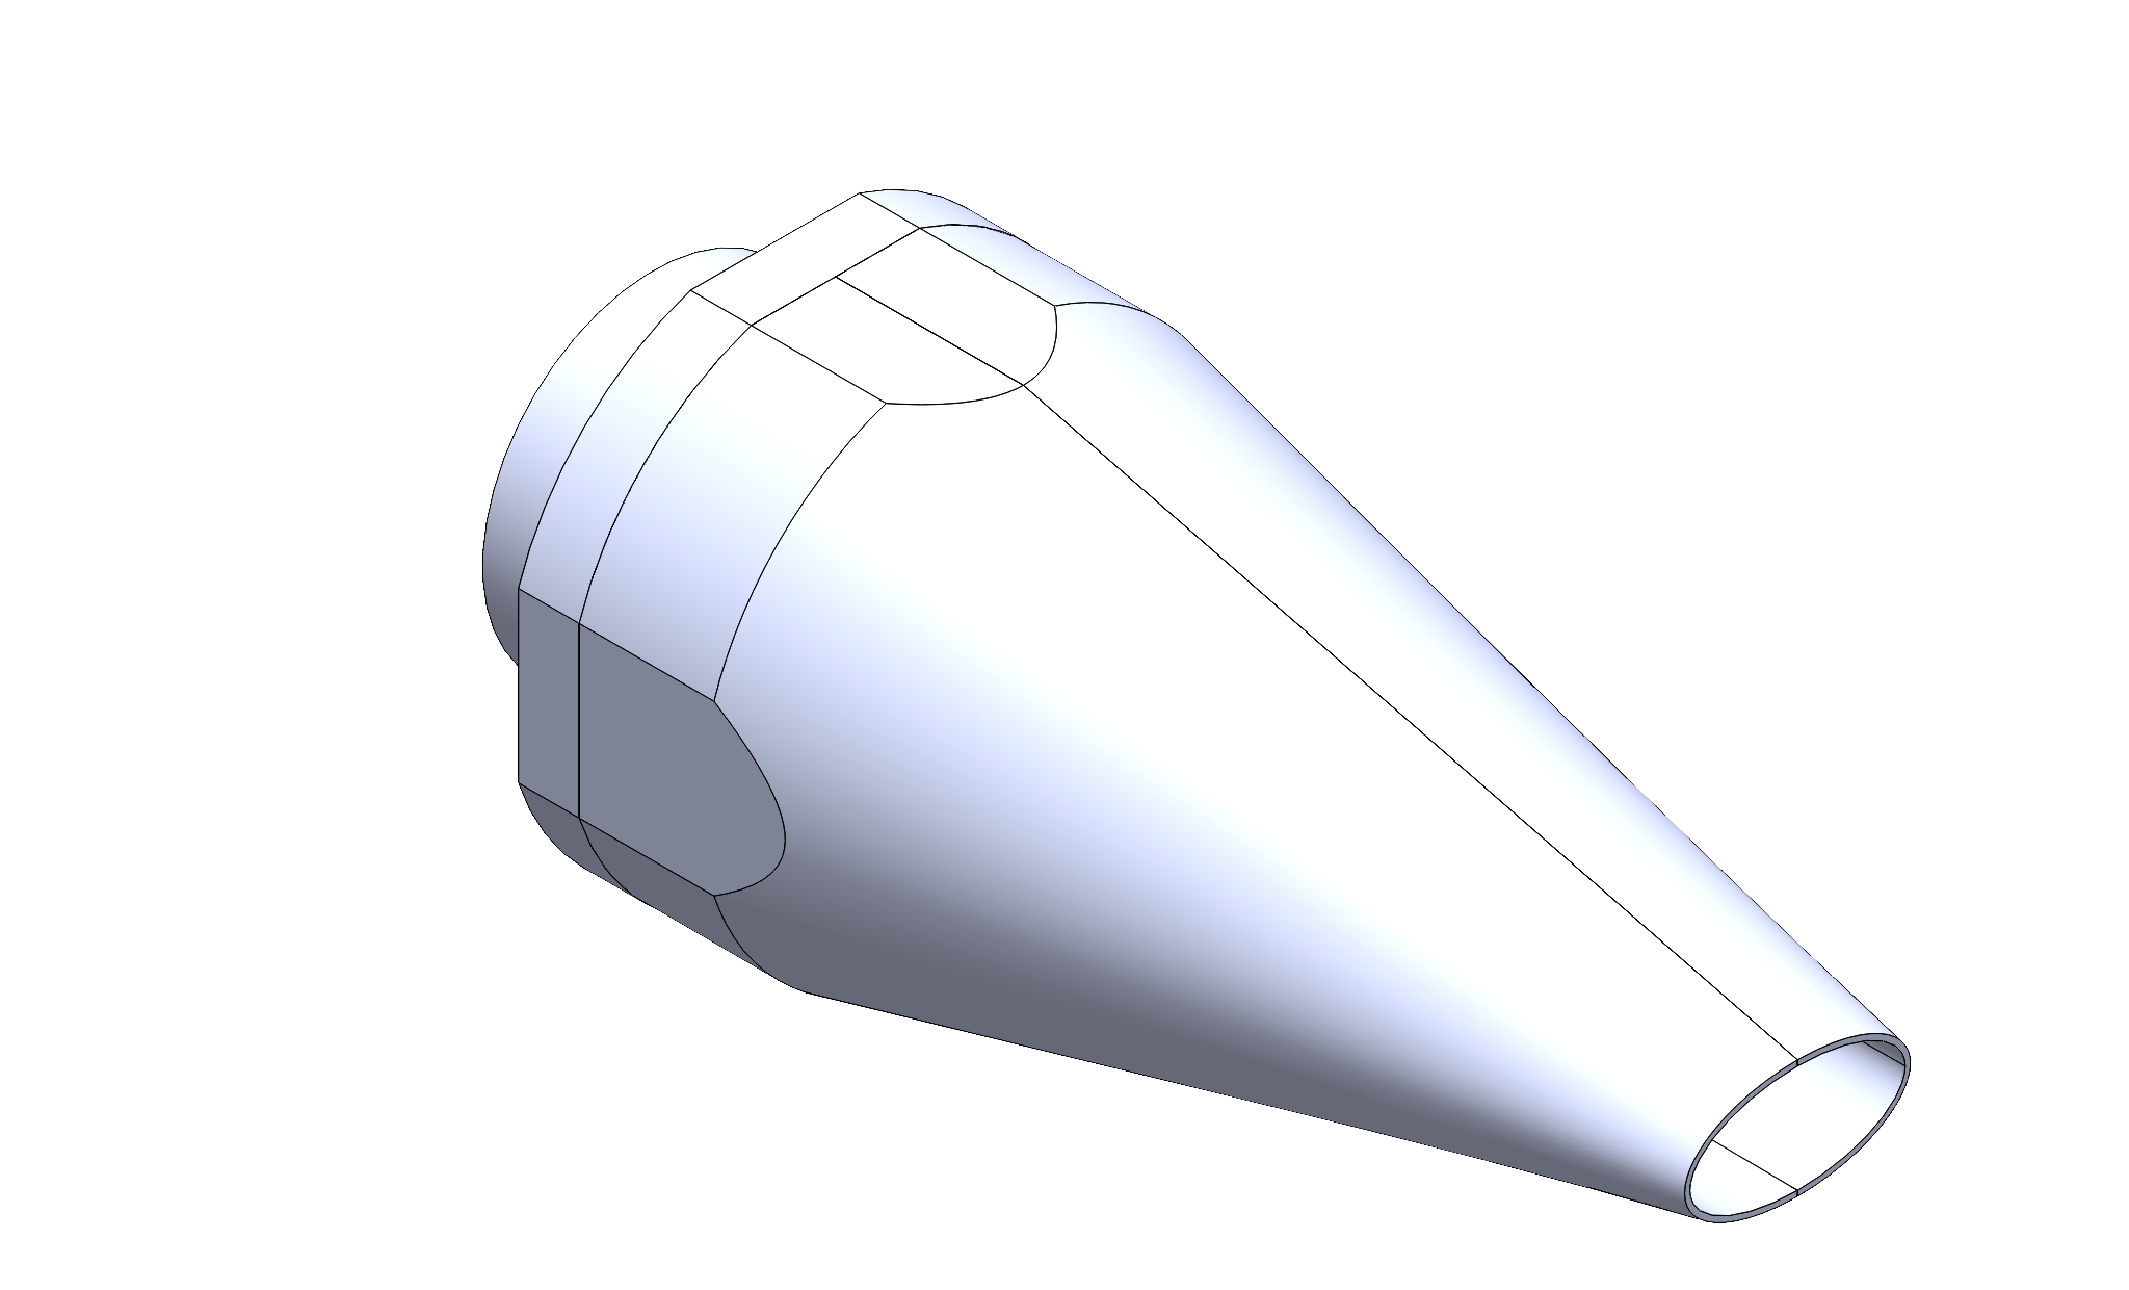 CAD design of Mach 2 Elliptic nozzle